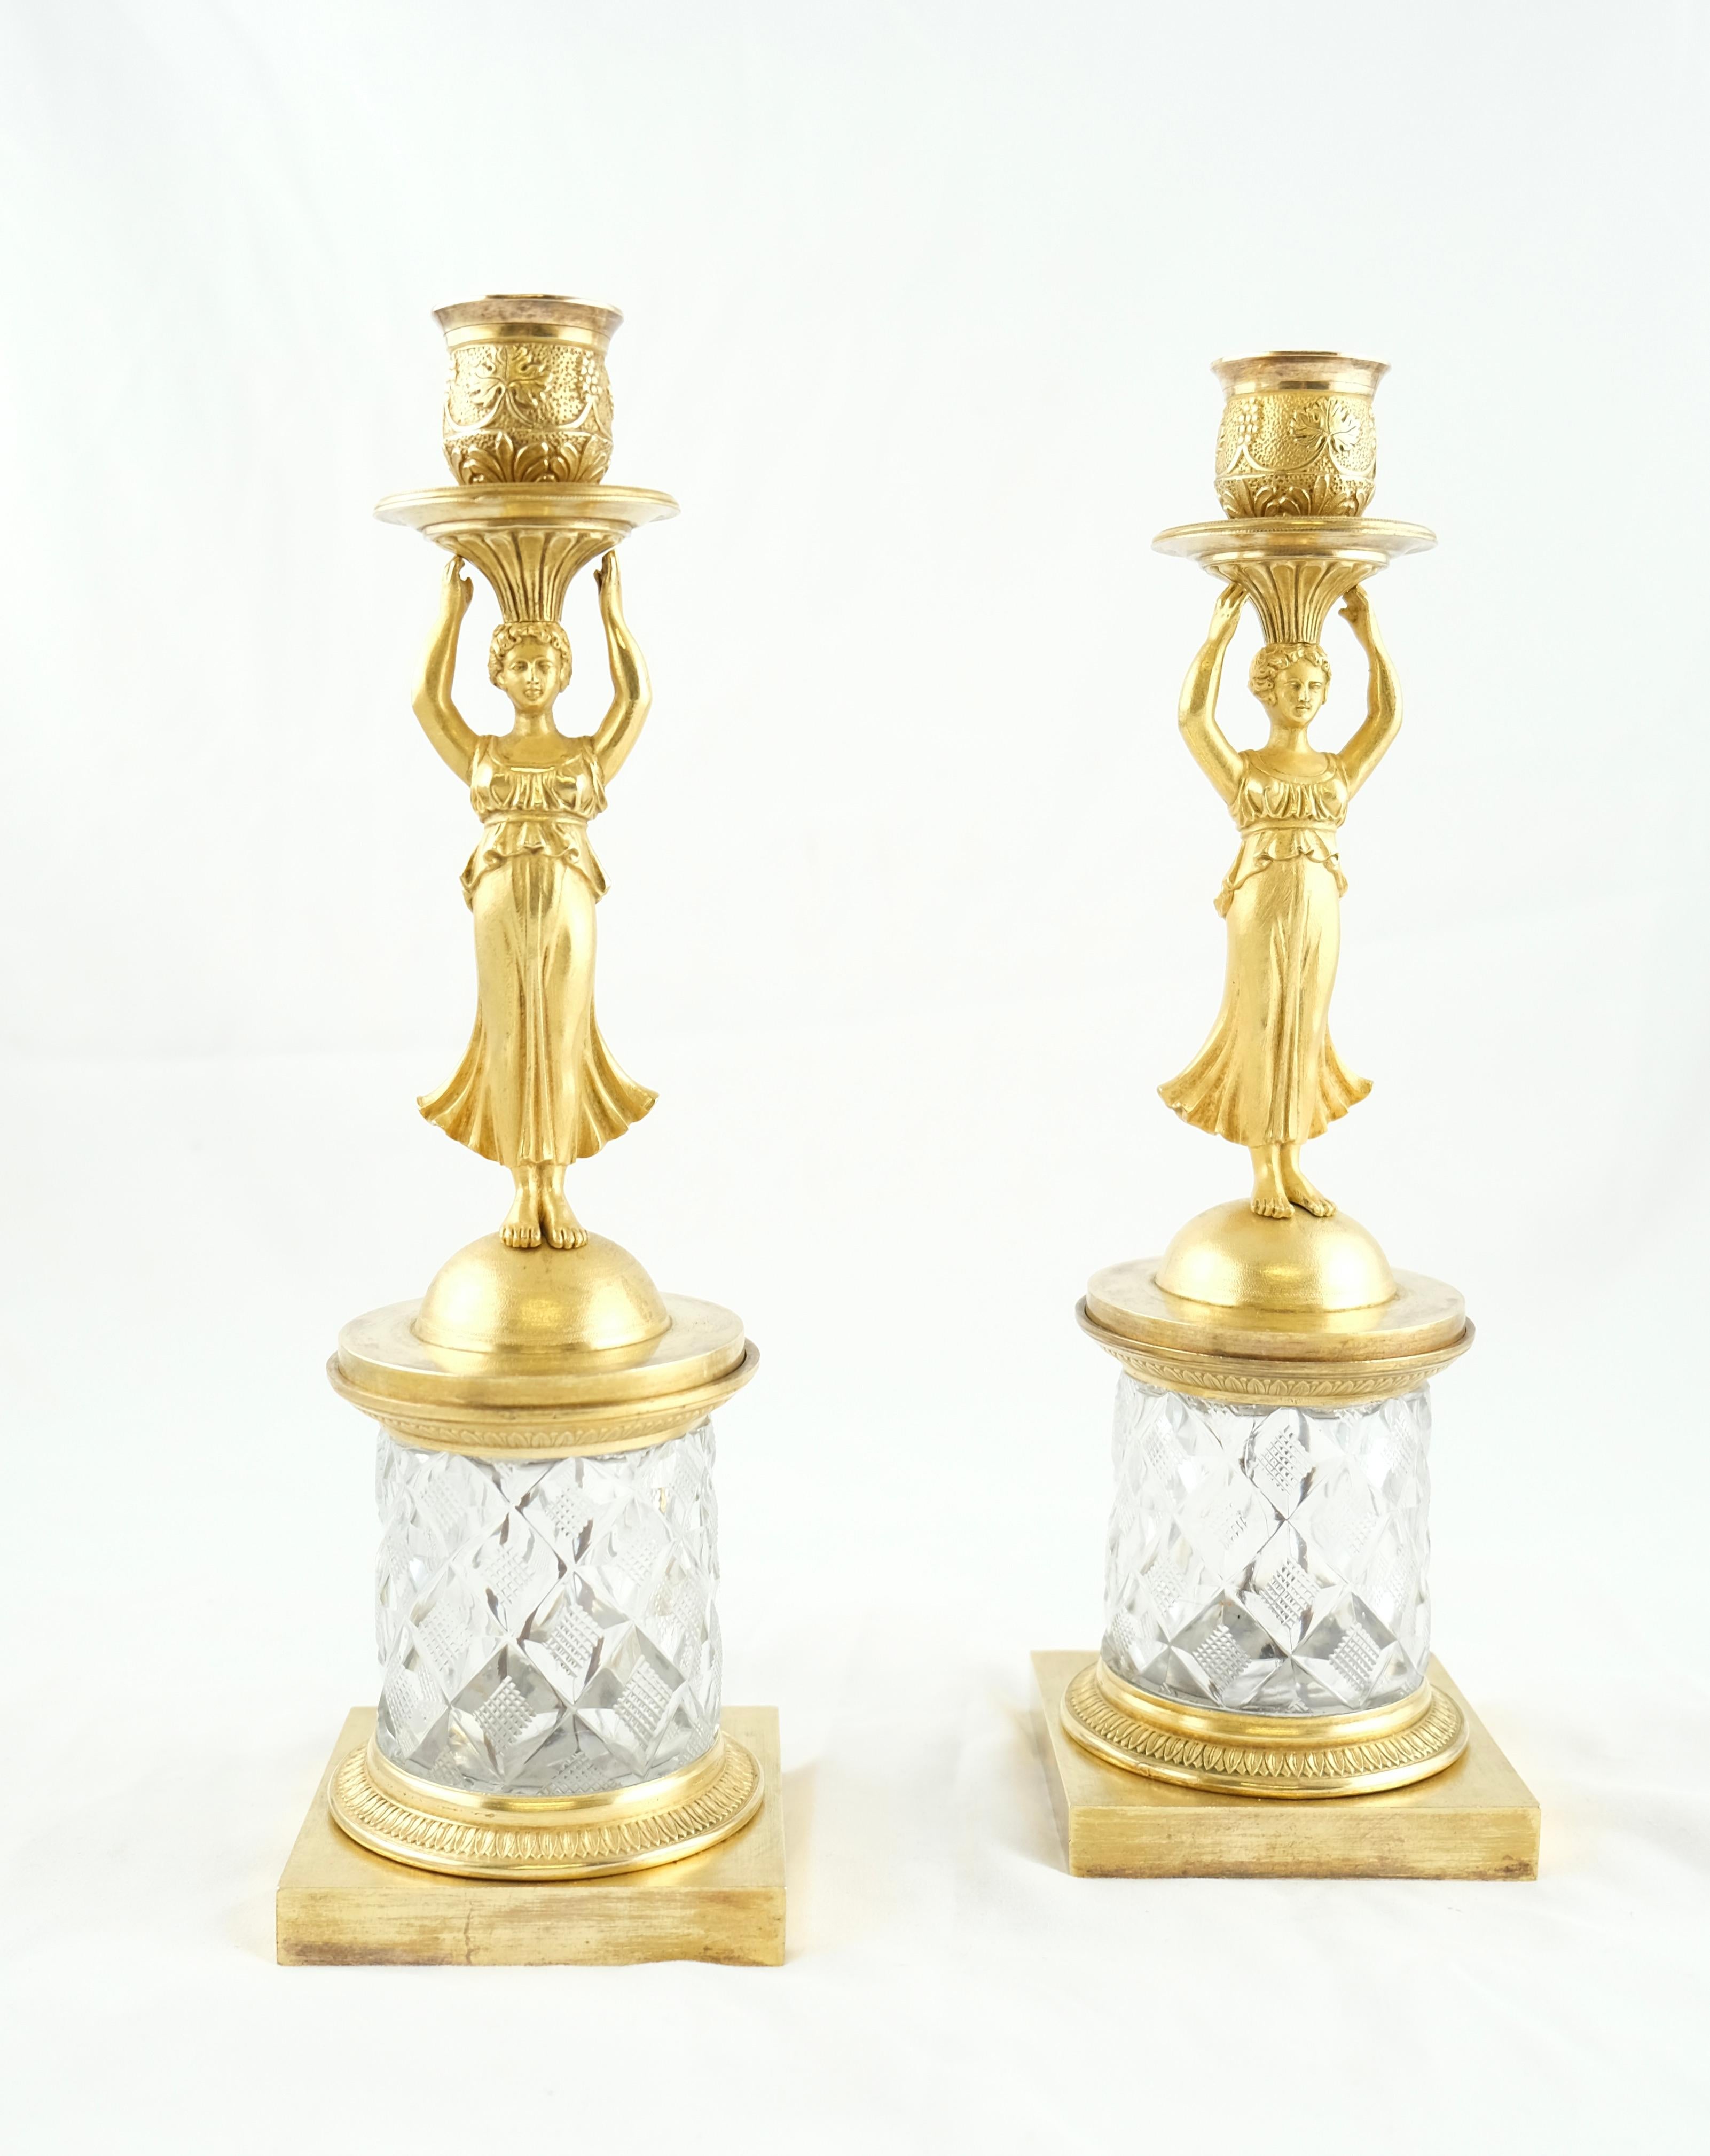 Ein charmantes Paar Kerzenständer. Die meisten Kerzenständer aus dieser Zeit, Louis XVl, Directoire und Empire, wurden aus vergoldeter oder dunkelpatinierter Bronze hergestellt. Diese Kerzenständer haben einen Sockel aus geschliffenem Kristall, was